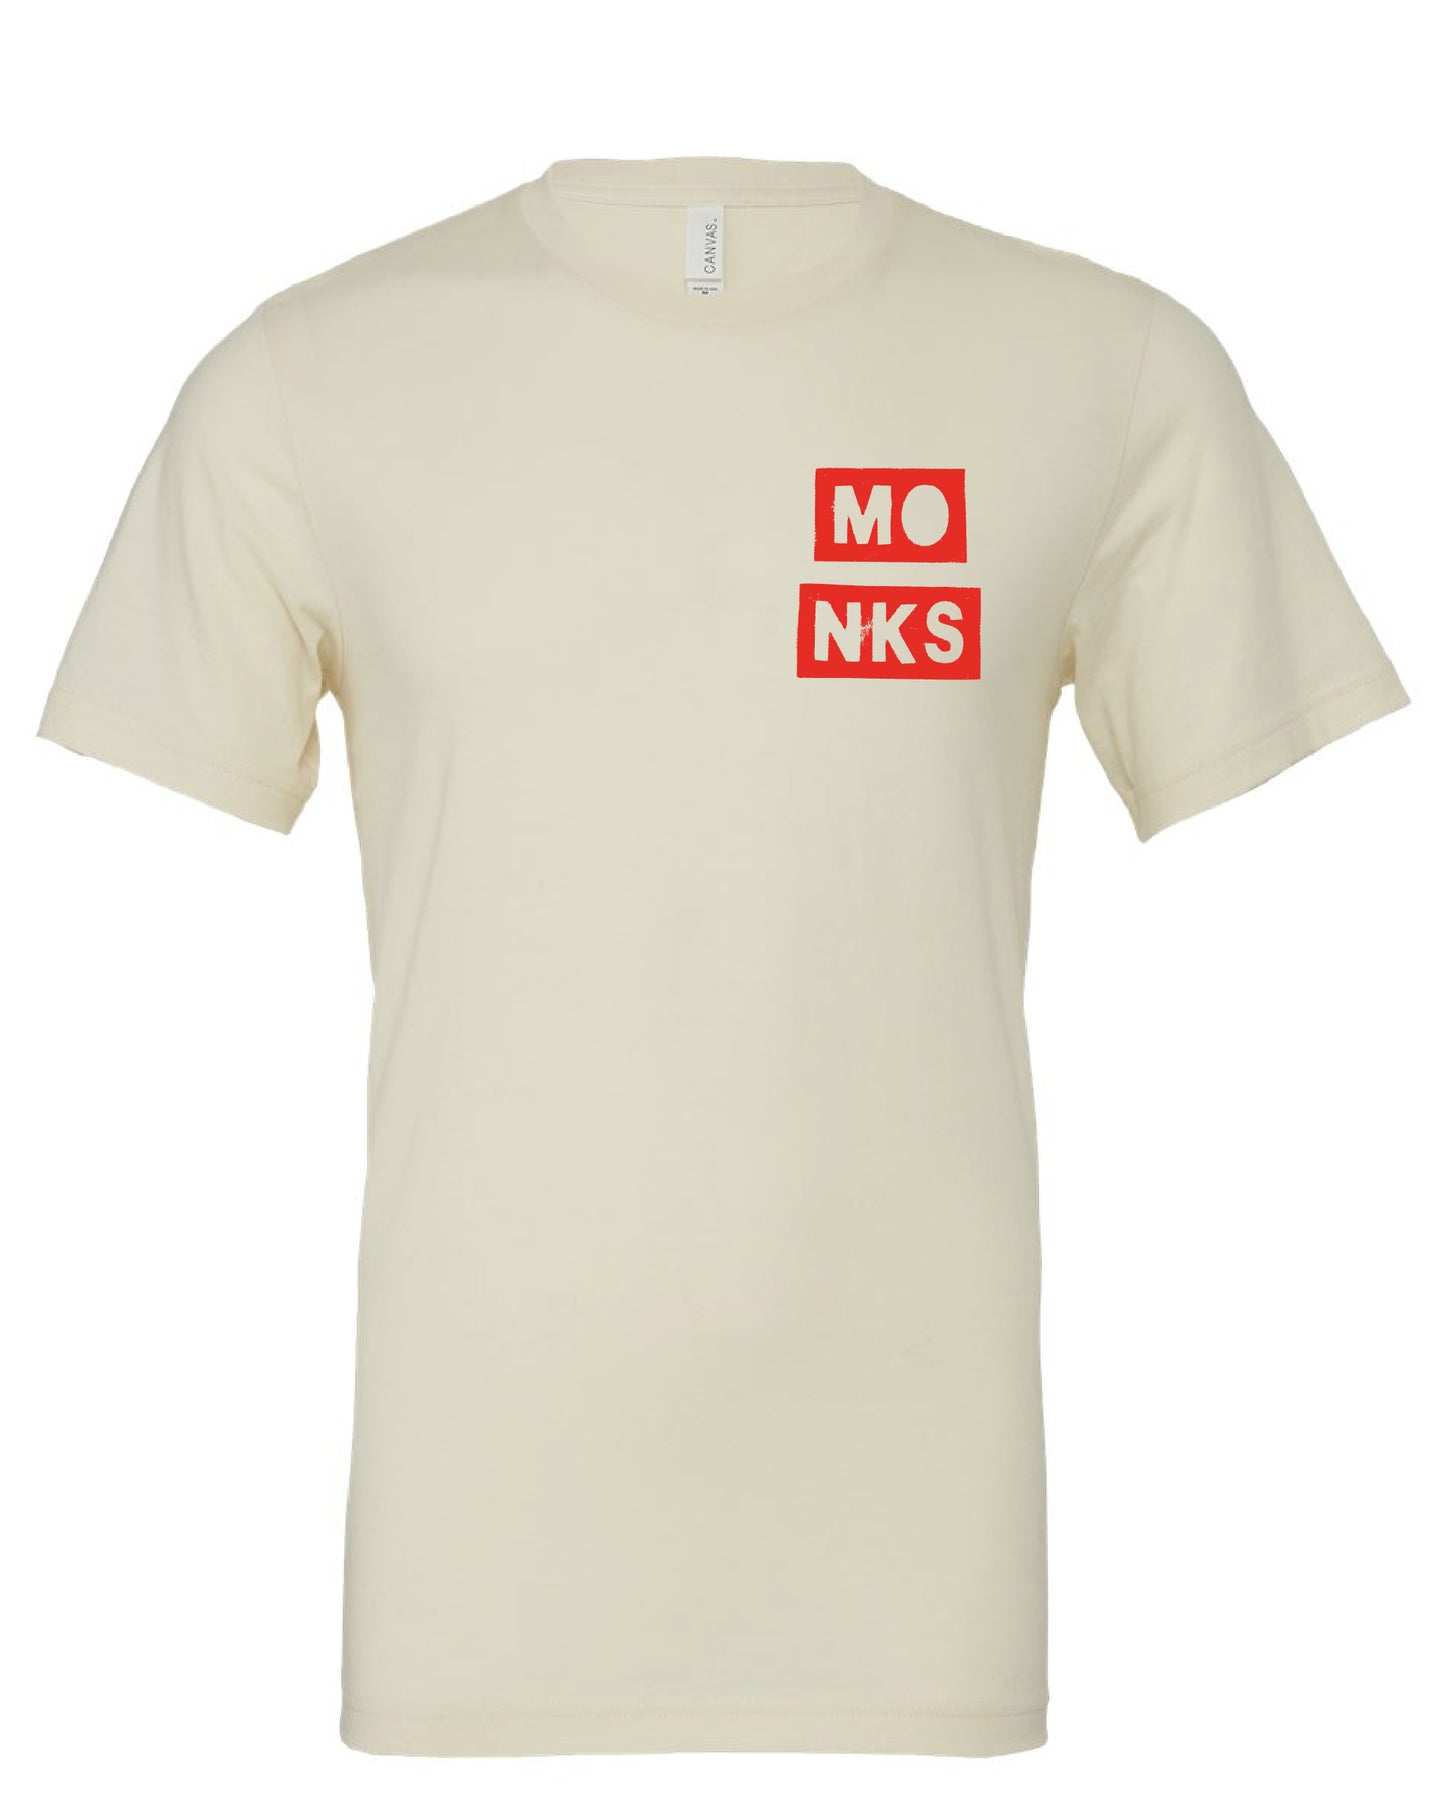 Monks T-Shirt - Front & Back Unisex Fit